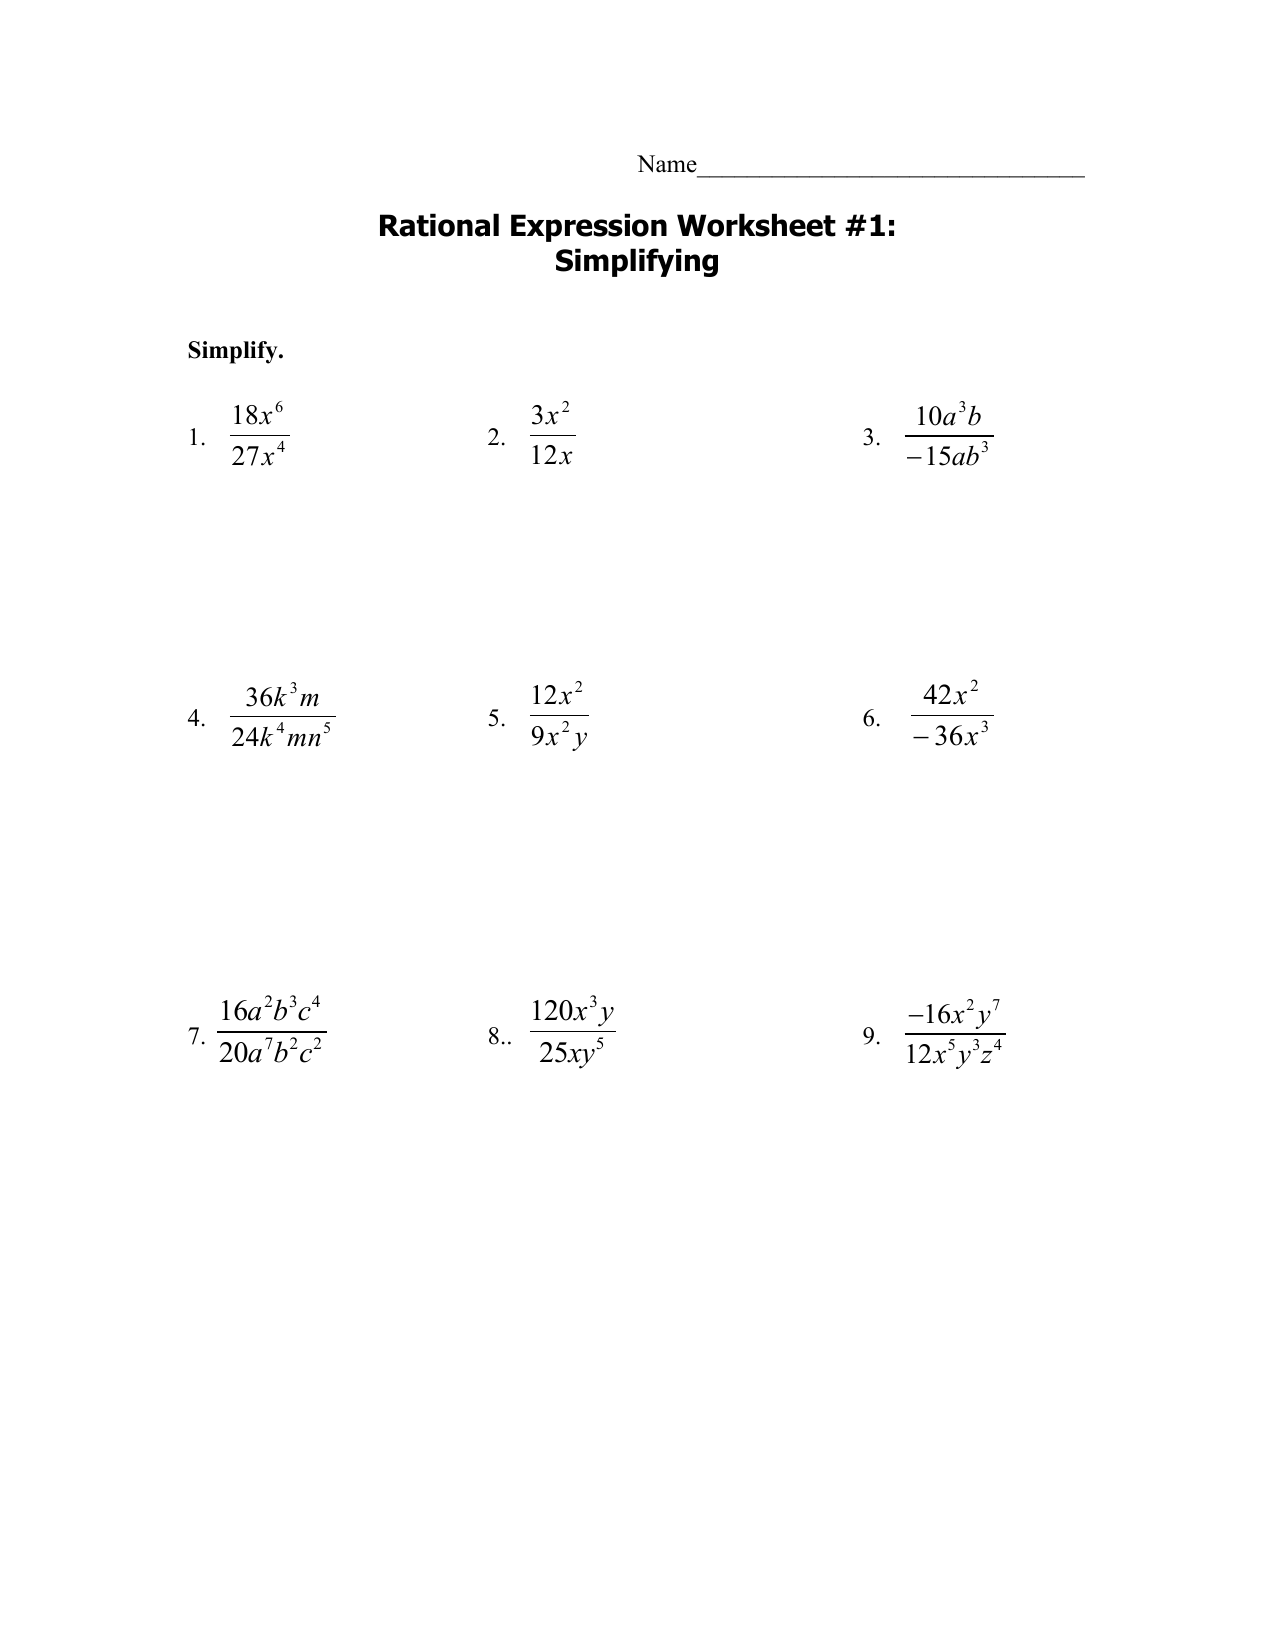 M25 rationalworksheets25-255 25 In Multiplying Rational Expression Worksheet